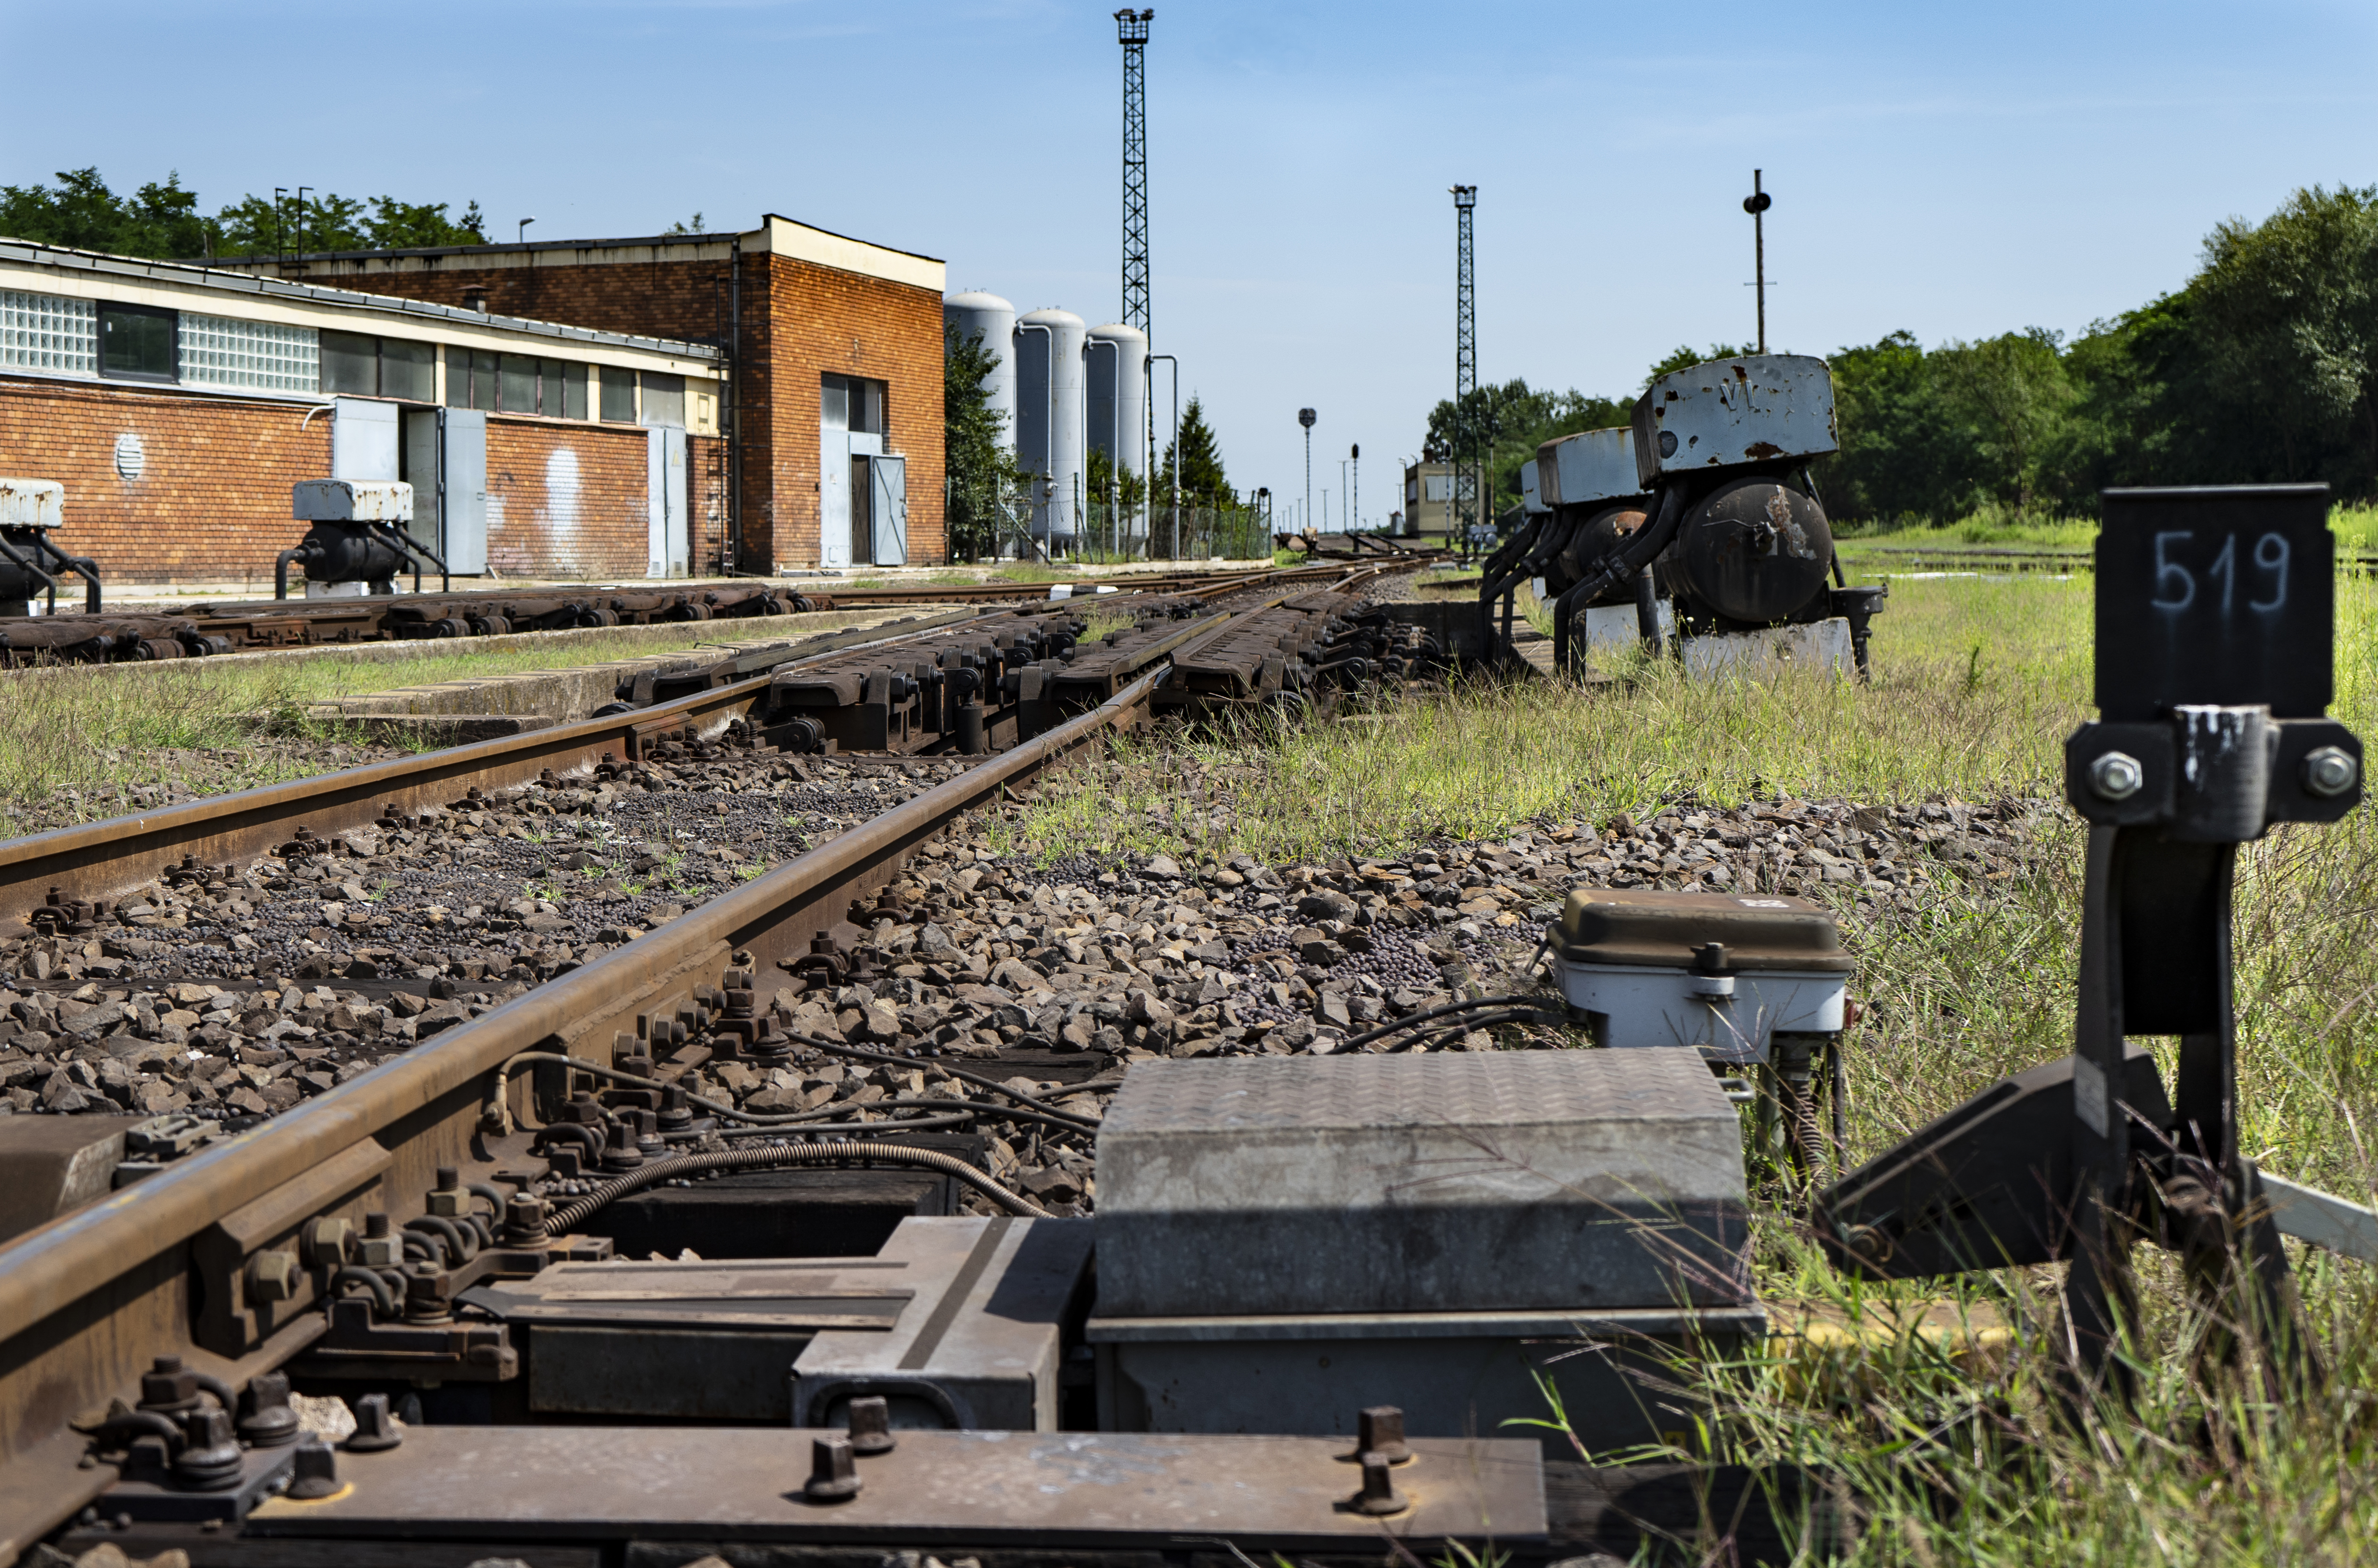 Eperjeske rendező pályaudvar, záhonyi vasúti átrakó körzet